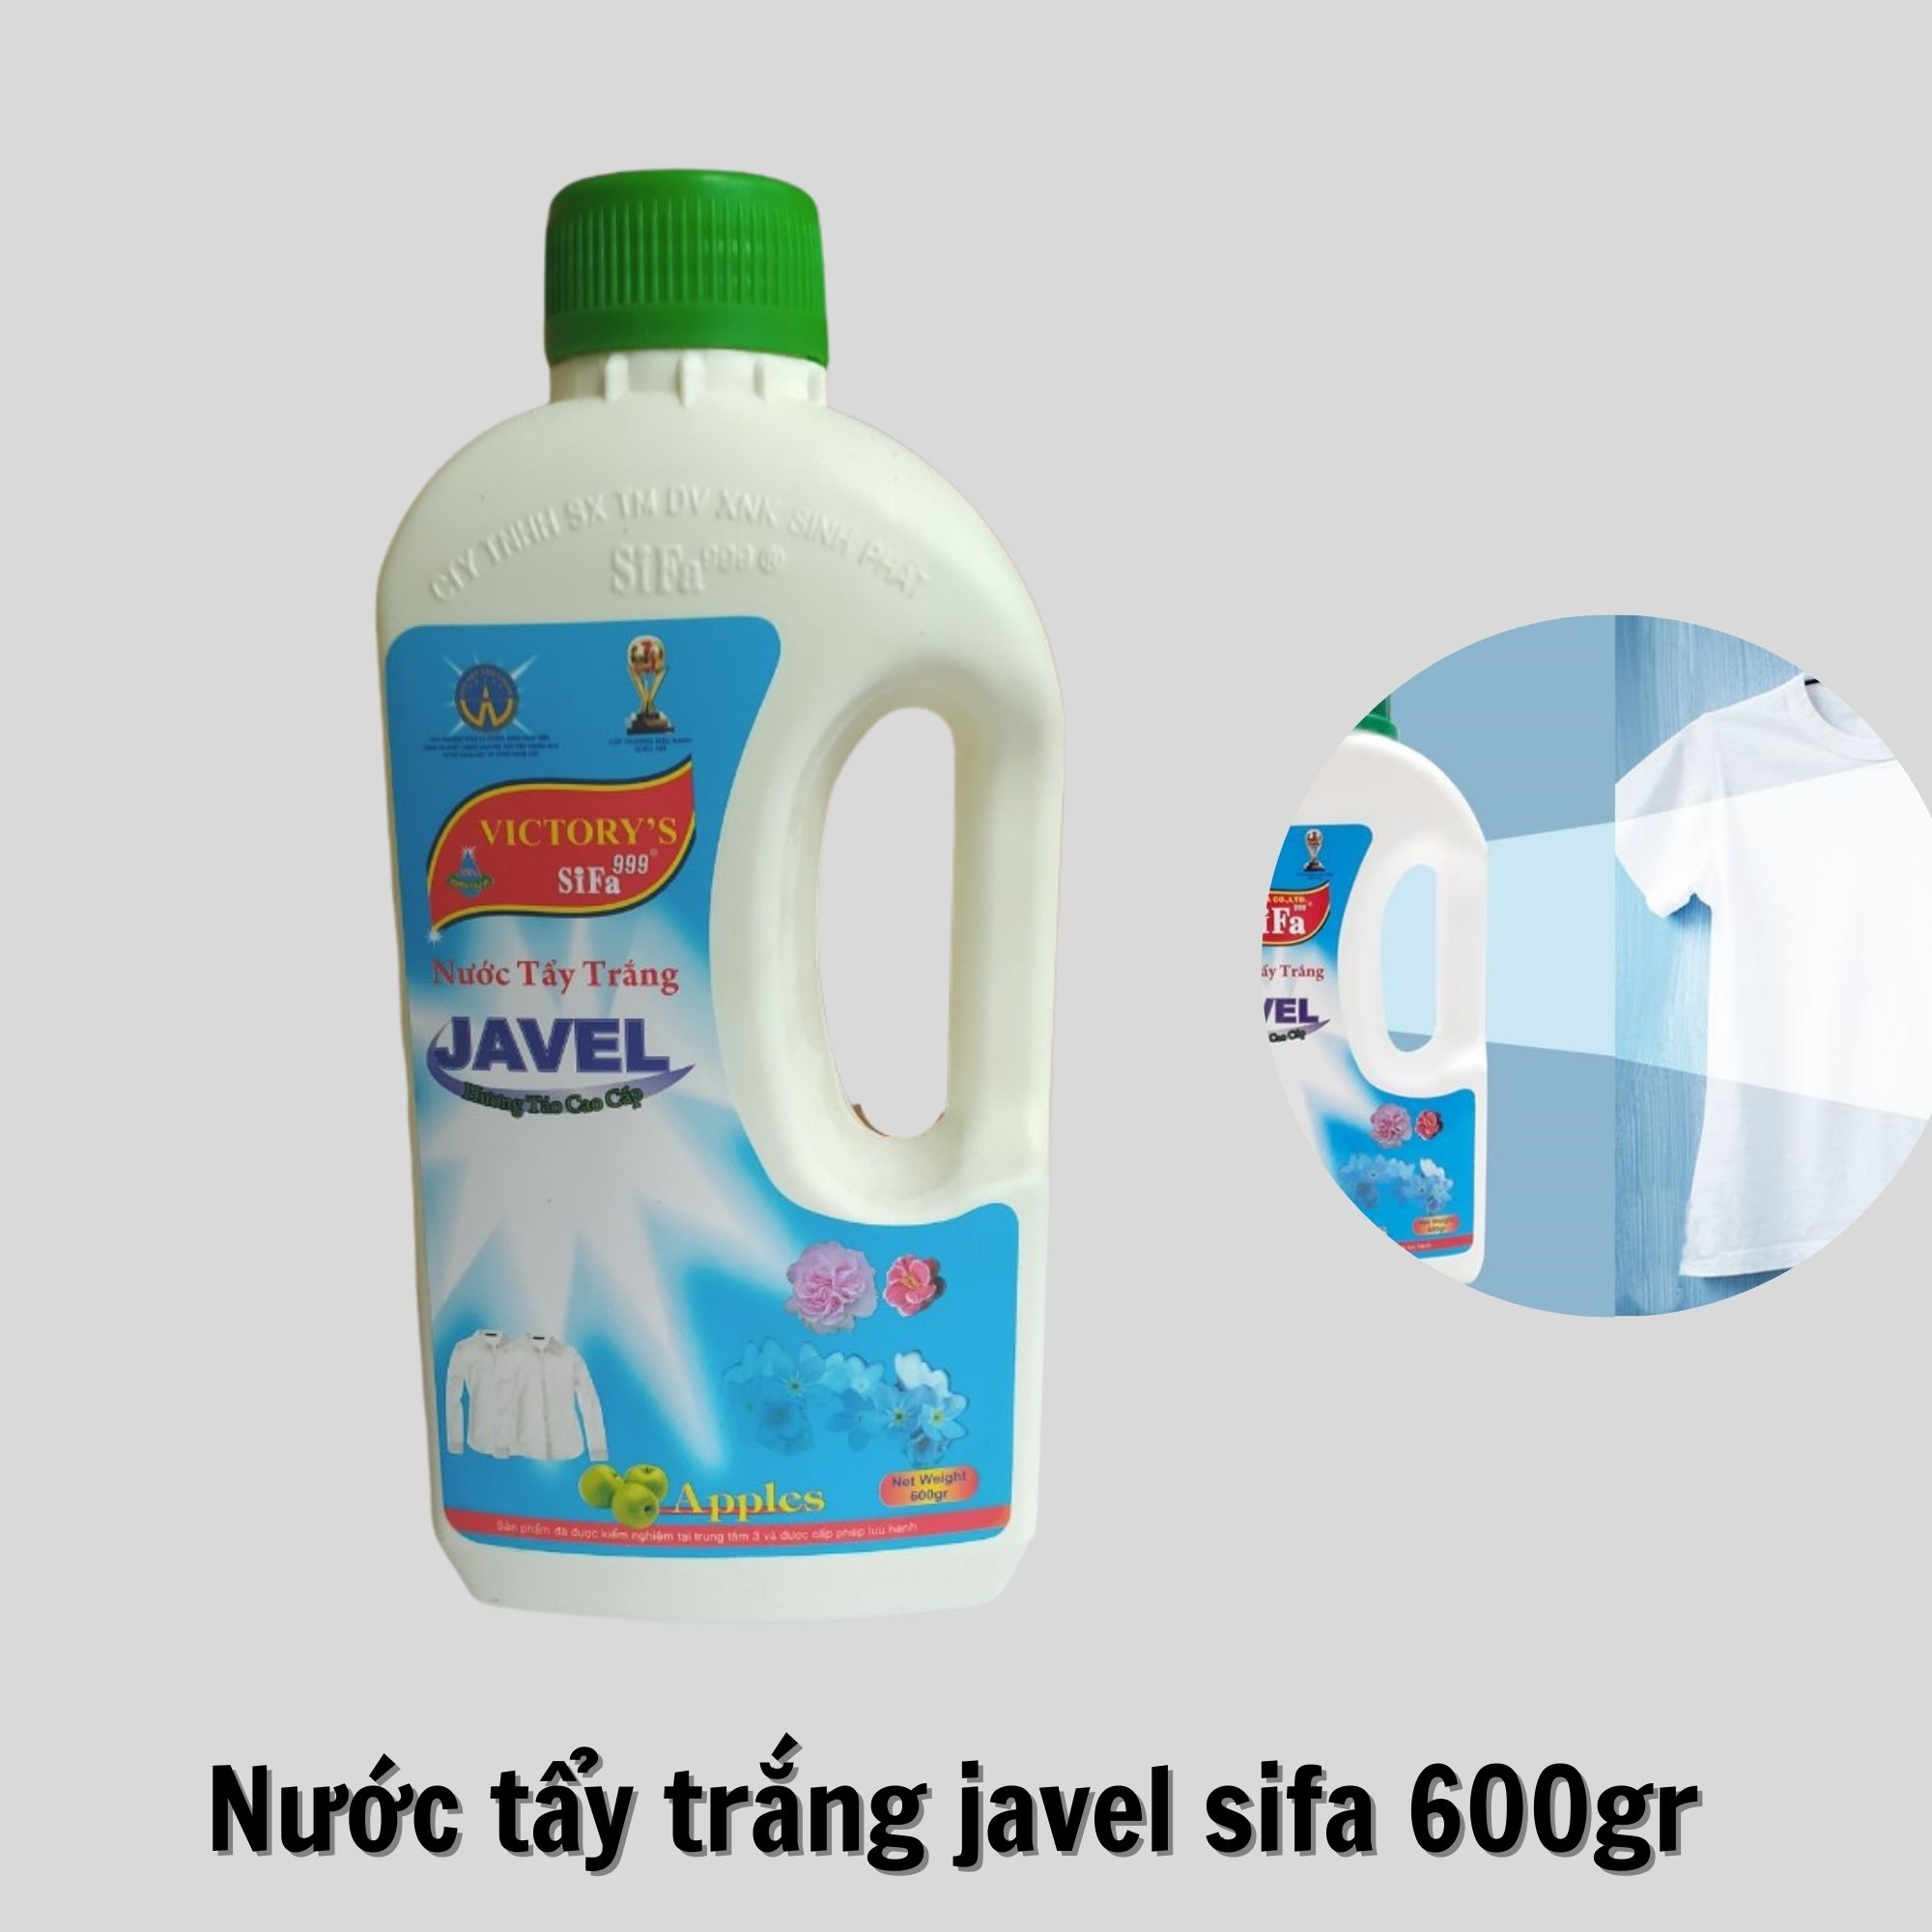 Nước tẩy trắng Javel thông minh Sifa ( tẩy trắng quần áo, đồ chất liệu vải ) cao cấp